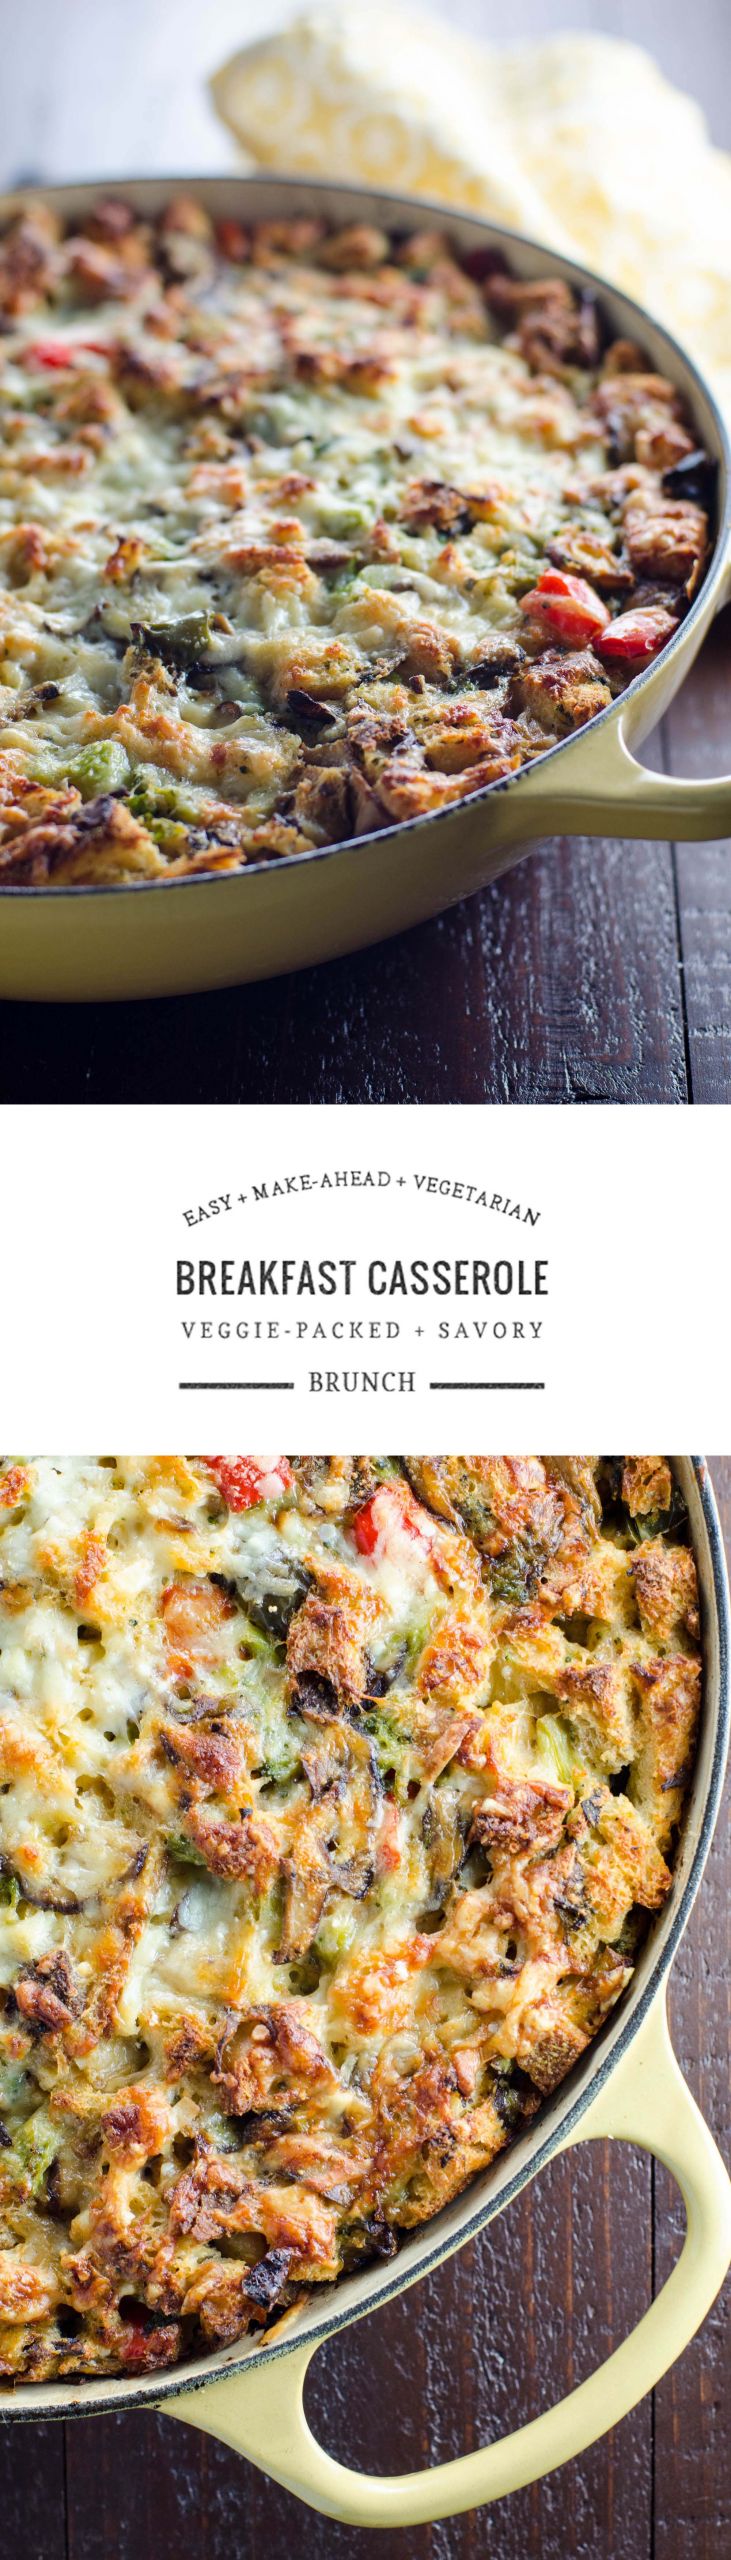 Vegan Breakfast Casserole Make Ahead
 Easy Ve arian Make Ahead Breakfast Casserole